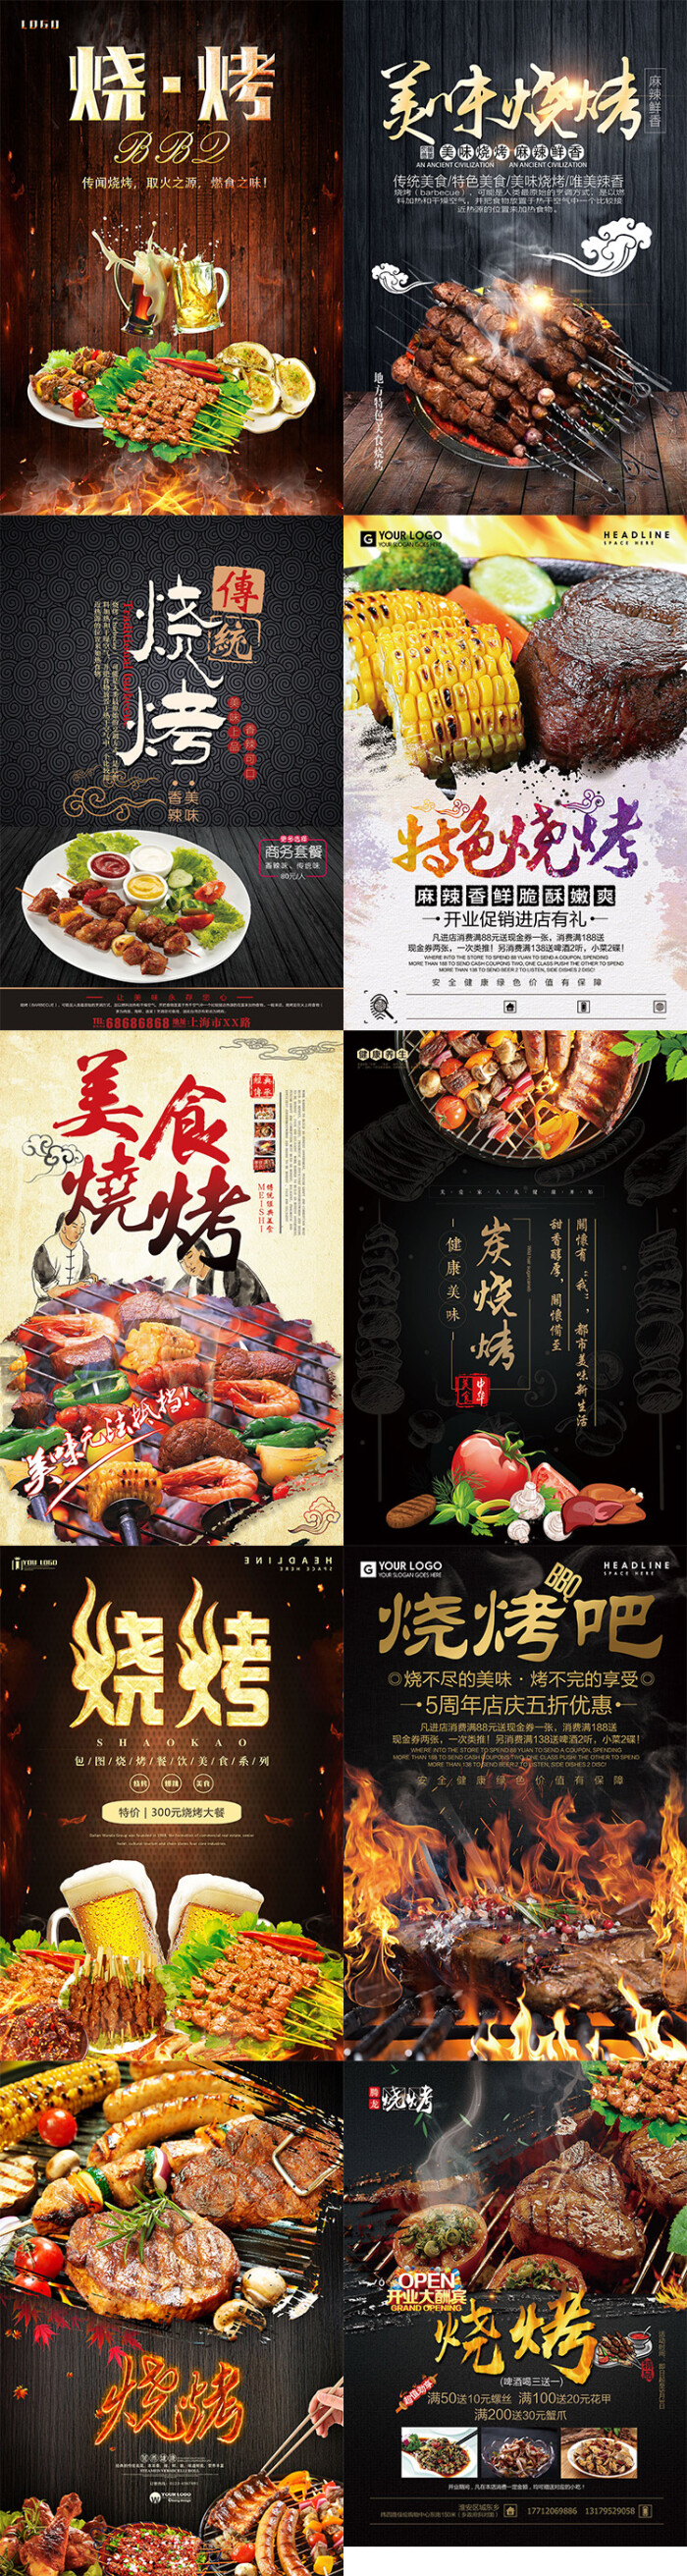 美食宵夜日韩bbq自助烧烤外卖大排档餐厅饭店海报传单模板版素材